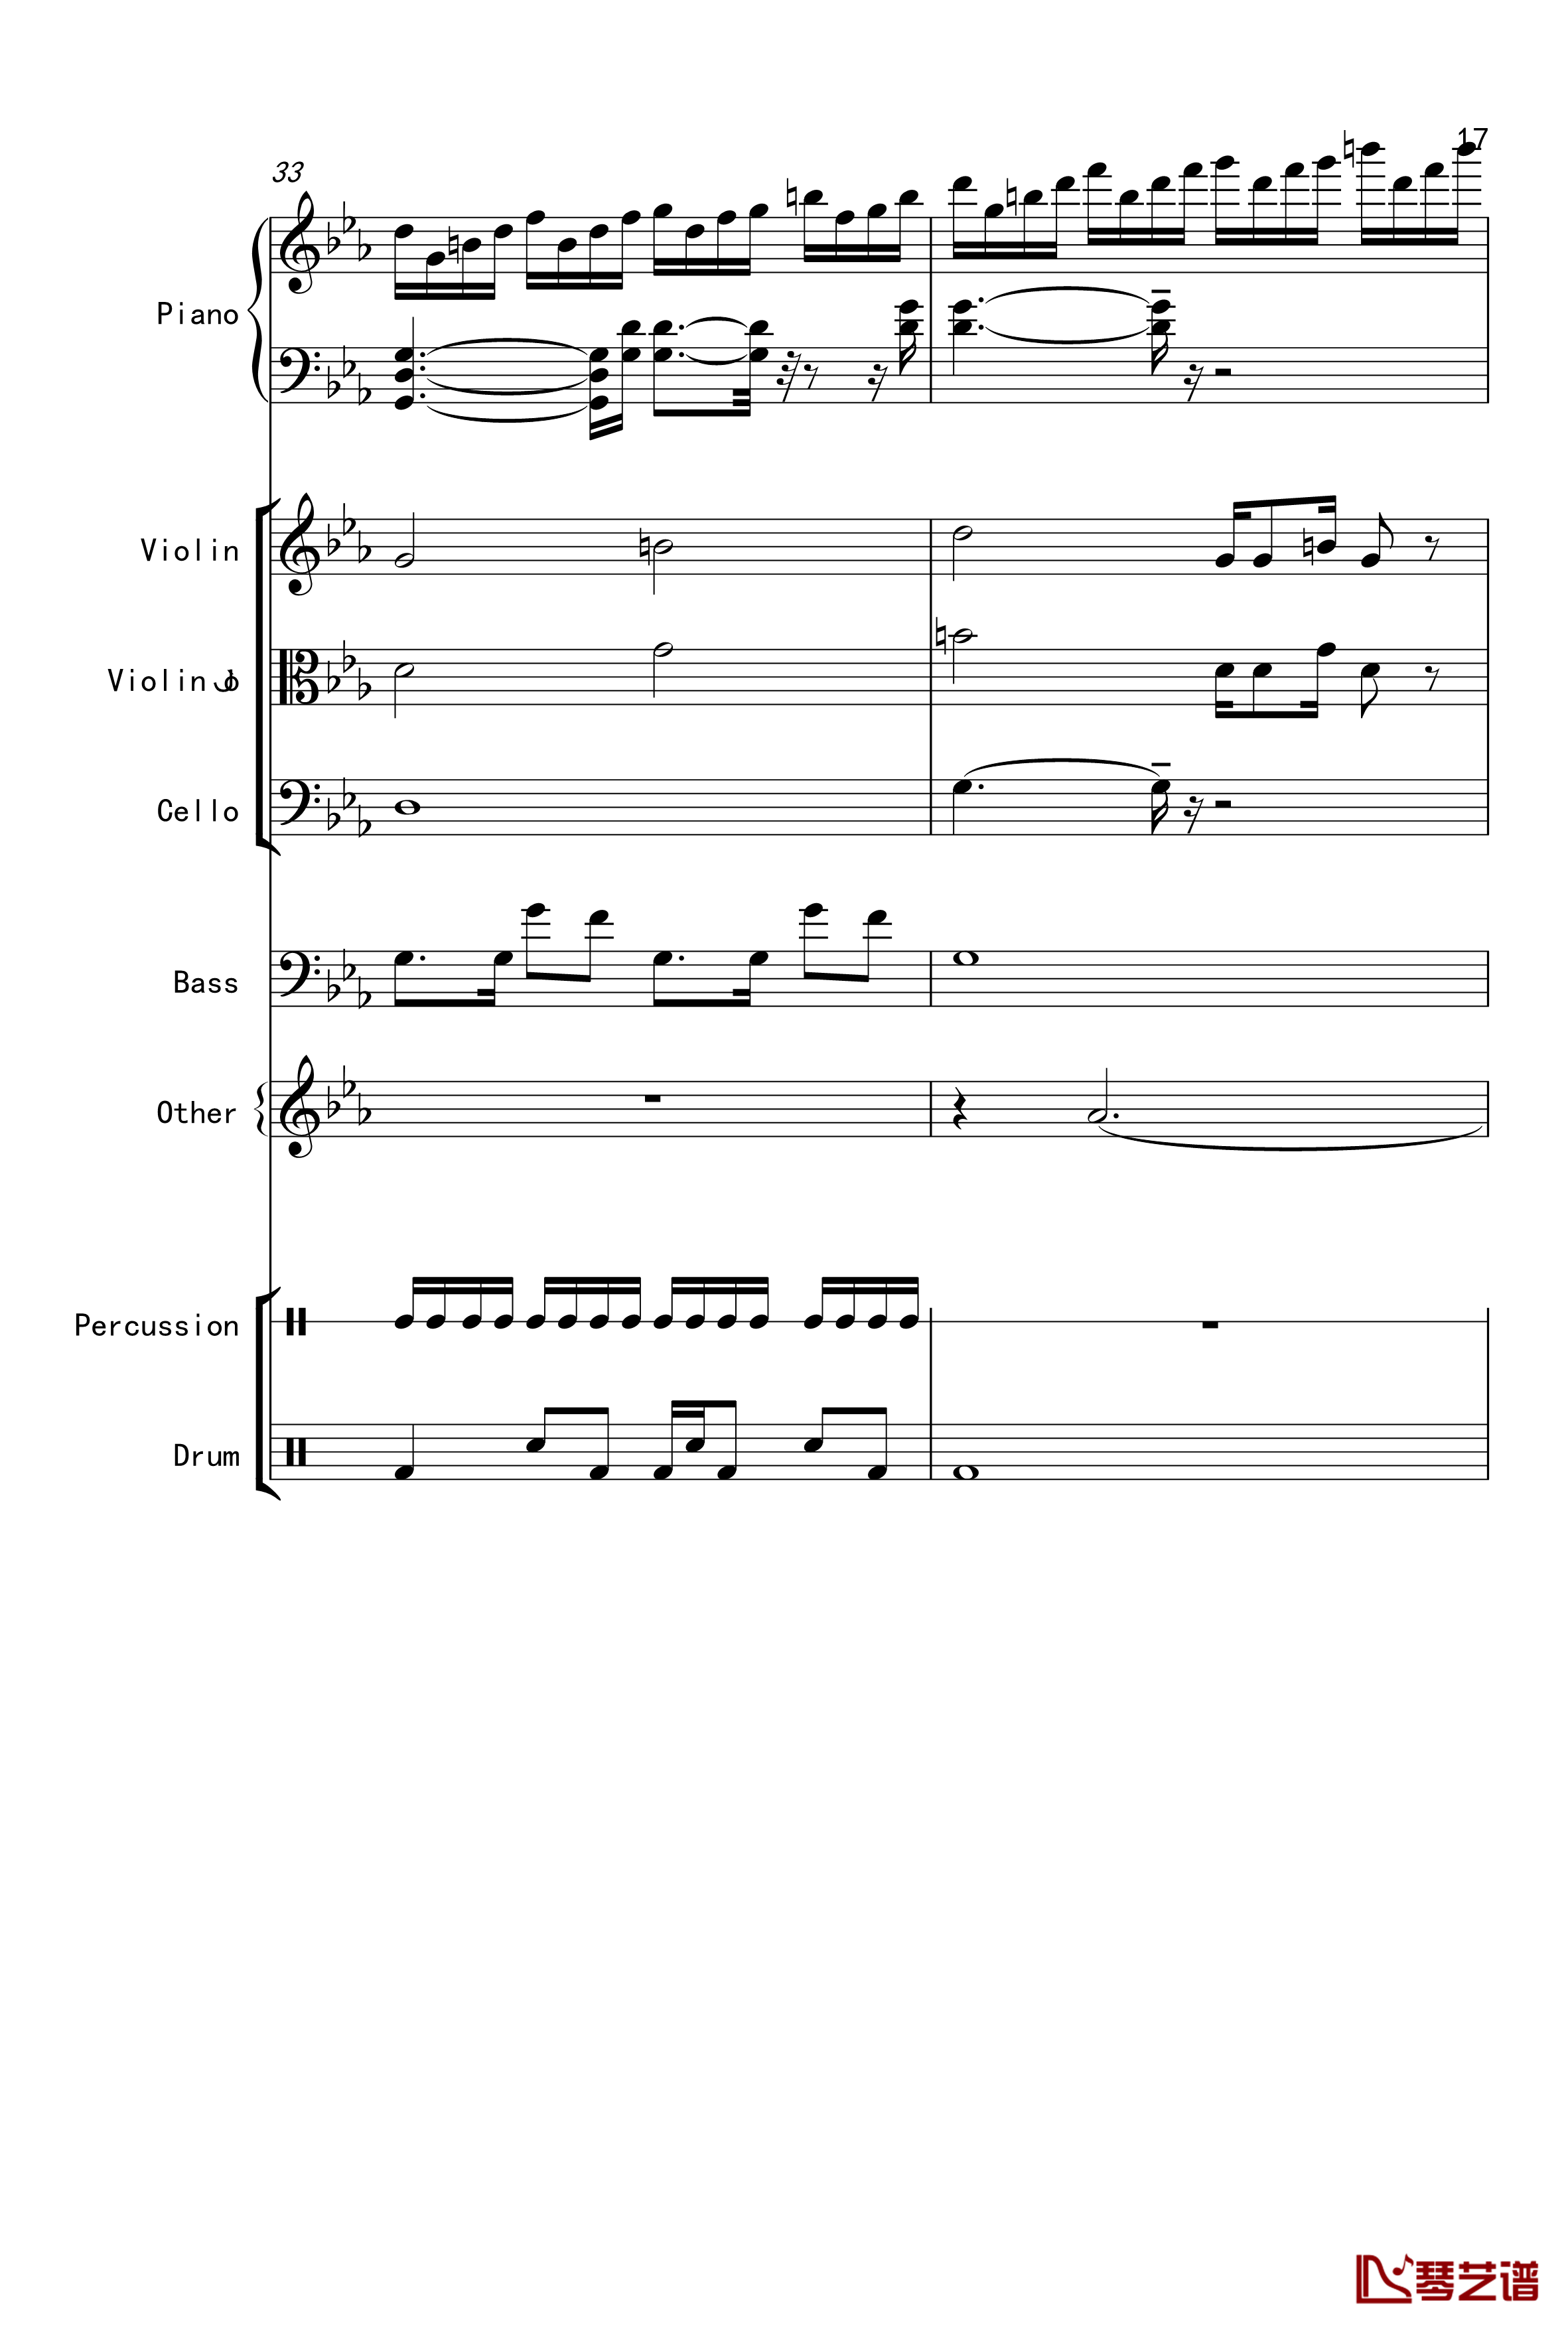 克罗地亚舞曲钢琴谱-Croatian Rhapsody-马克西姆-Maksim·Mrvica17